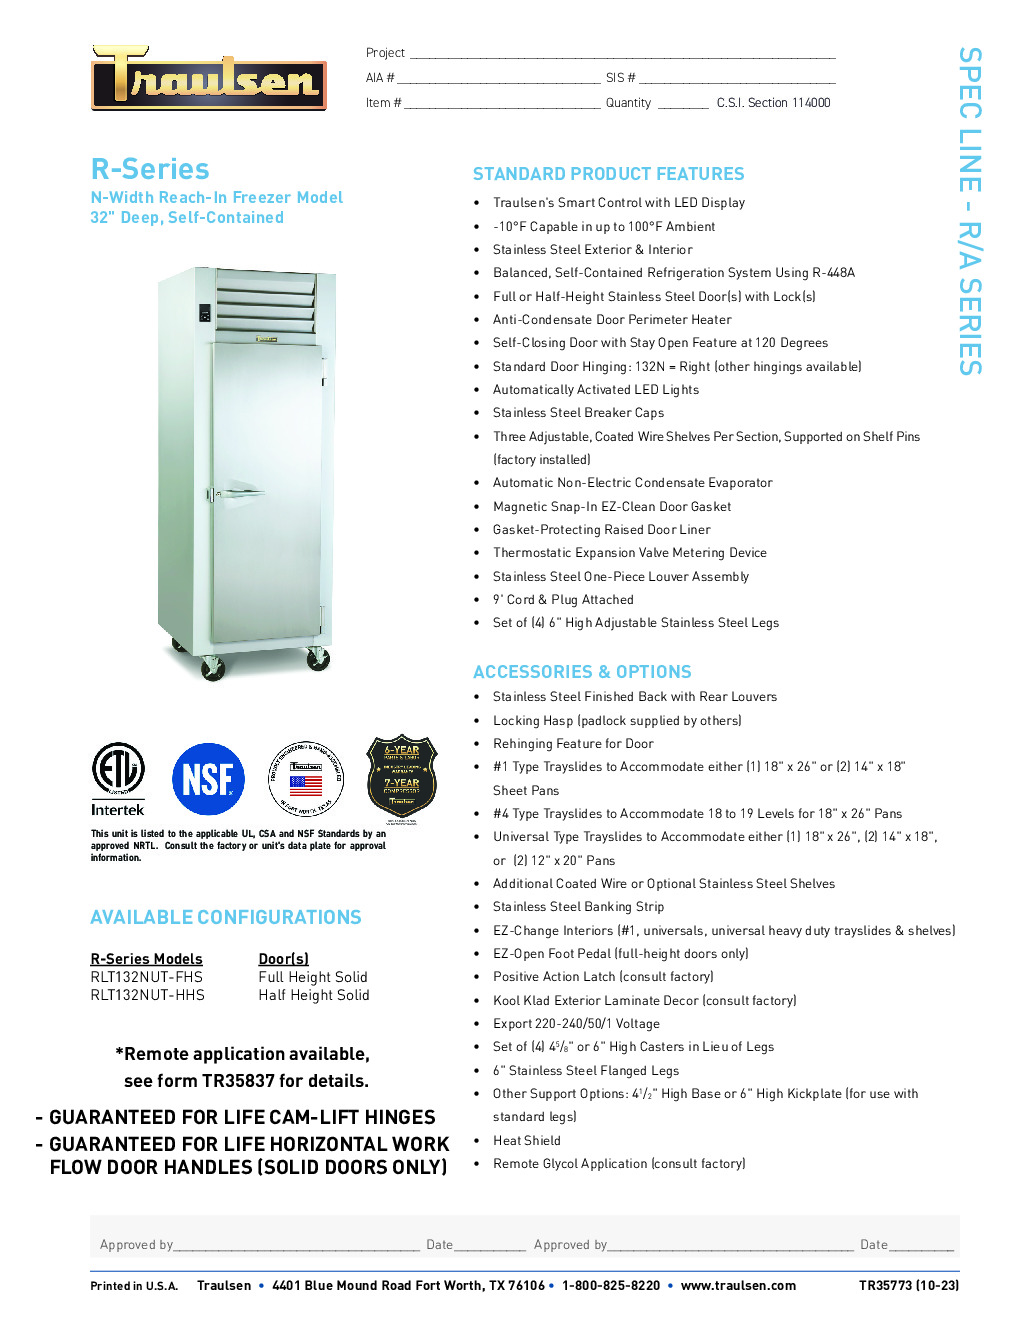 Traulsen RLT132N-HHS Reach-In Freezer